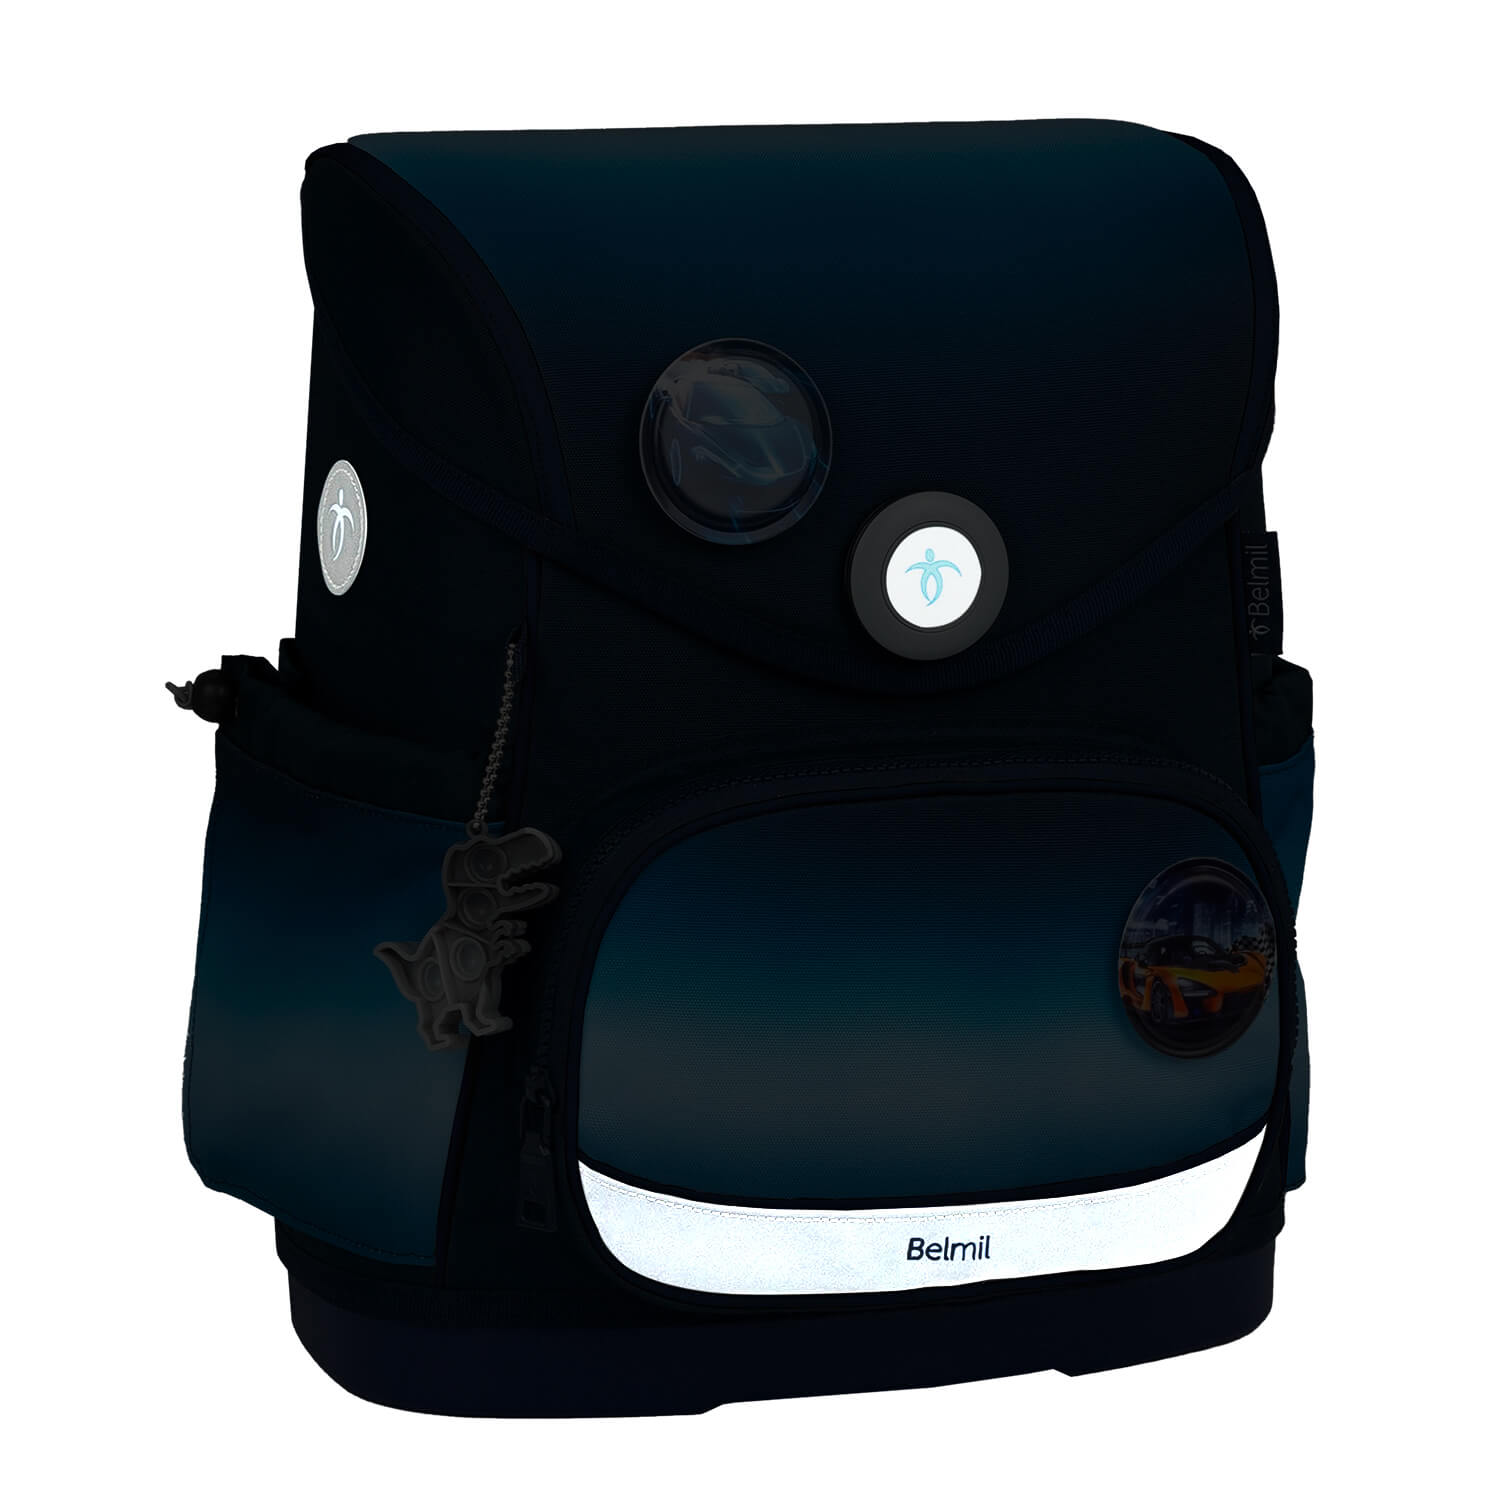 Premium Compact Plus Blue Navy Schoolbag set 5pcs.